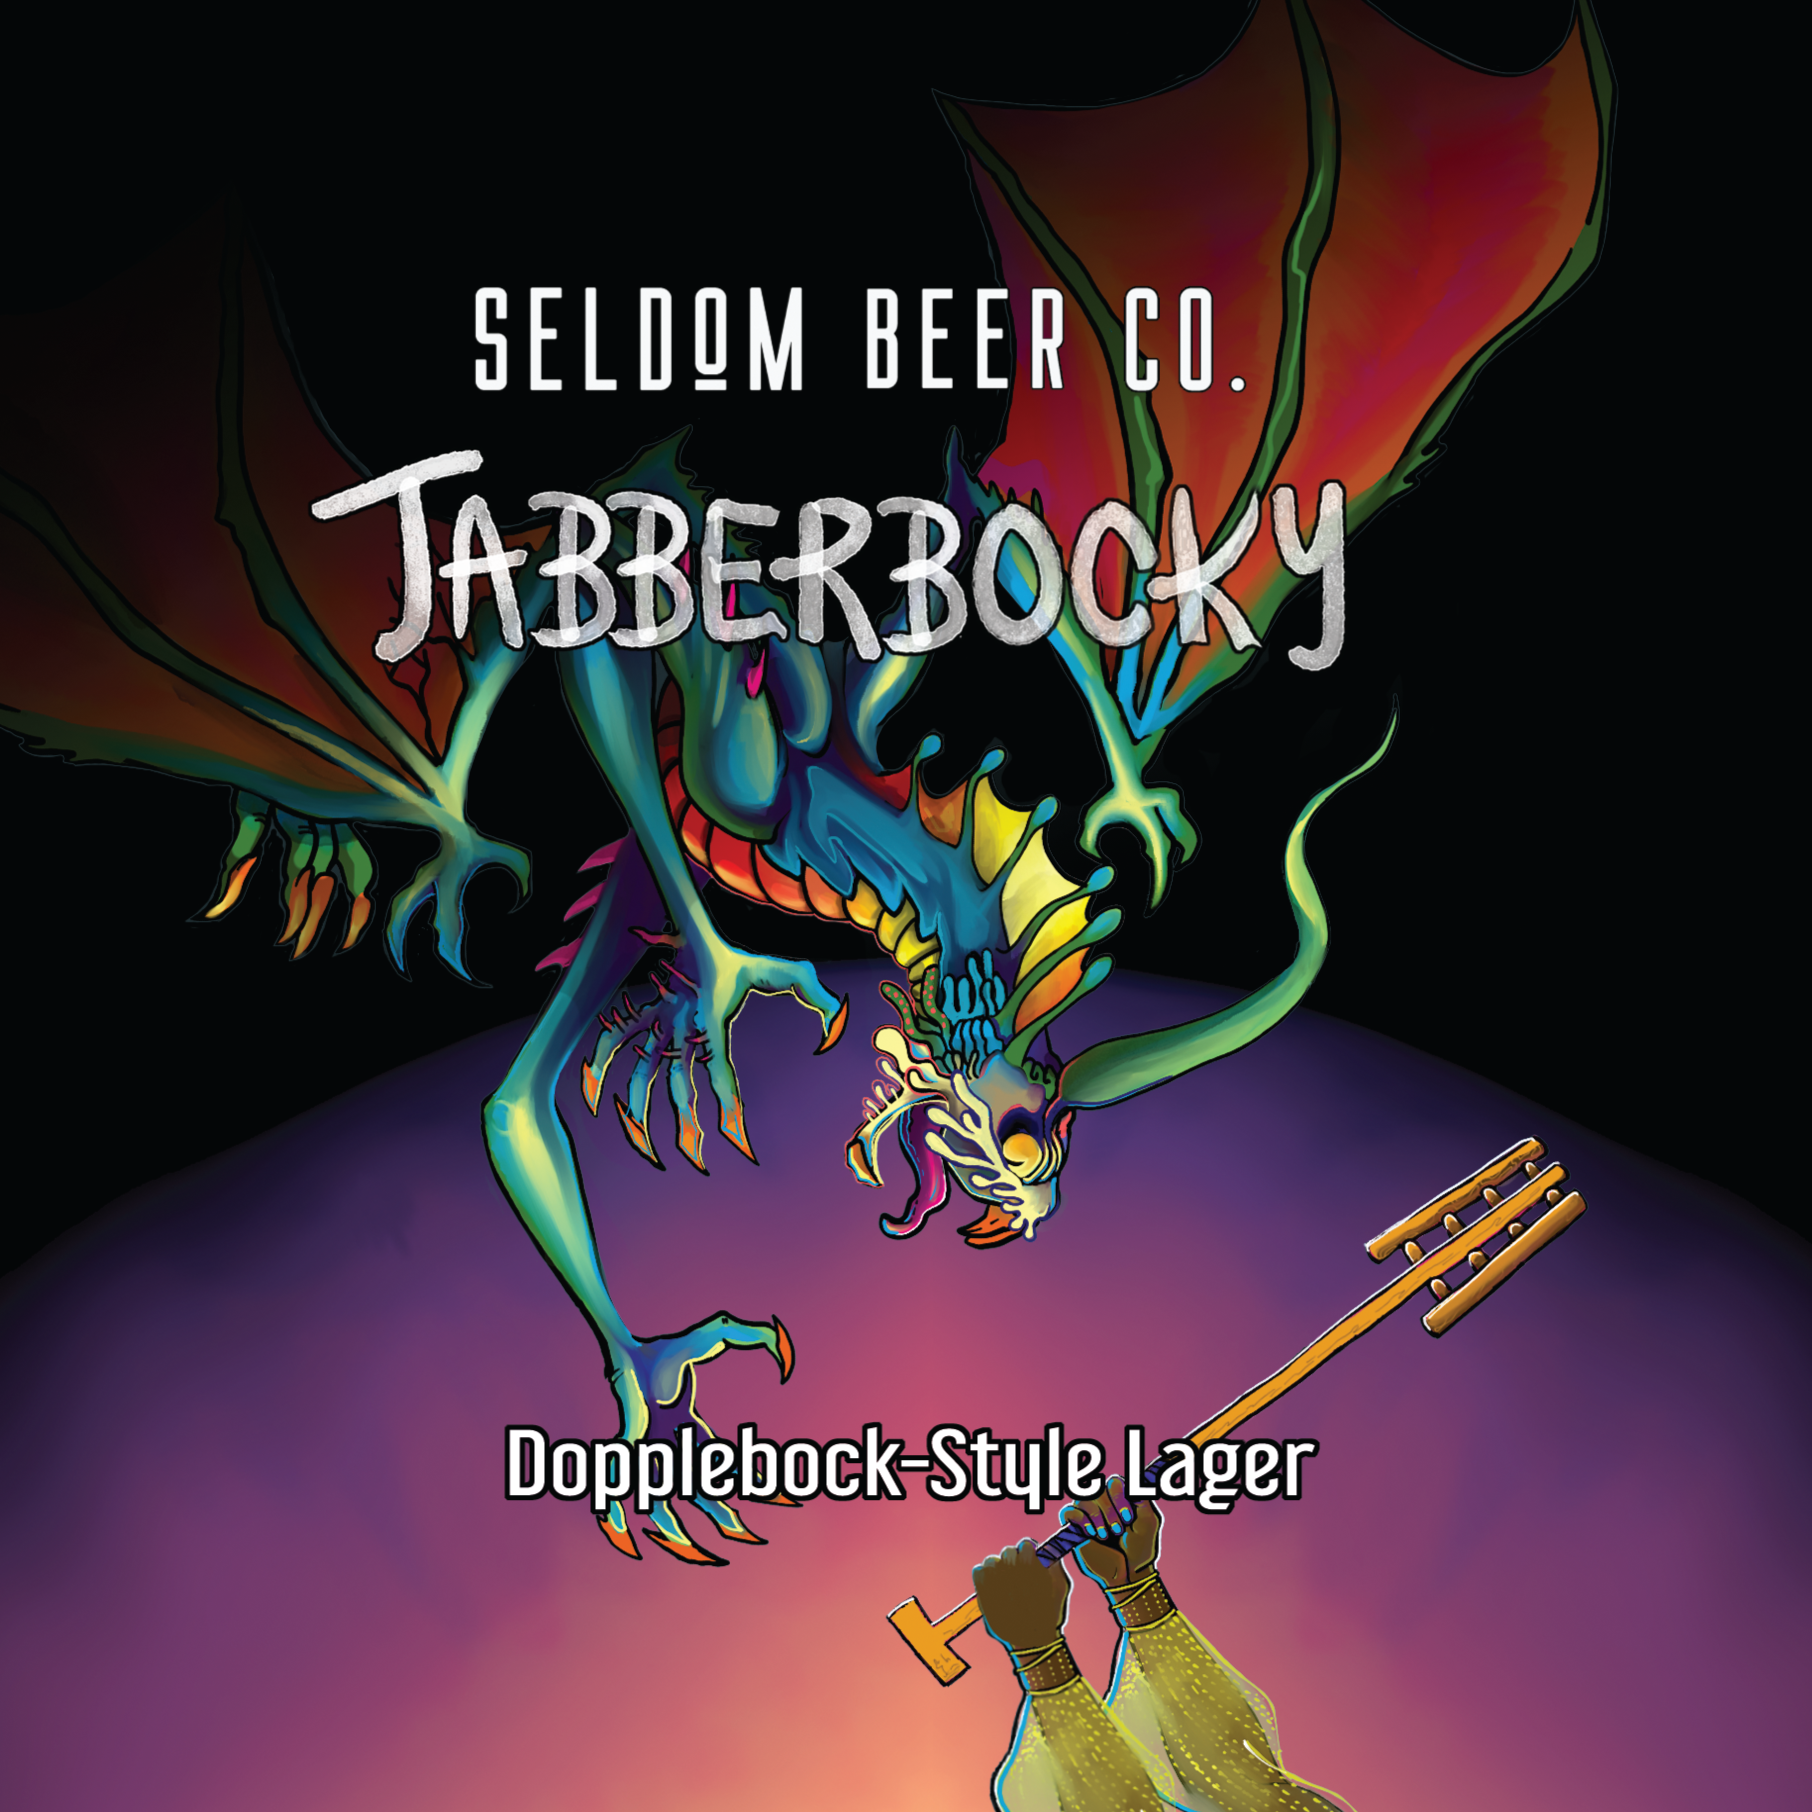 Jabberbocky 4-pack